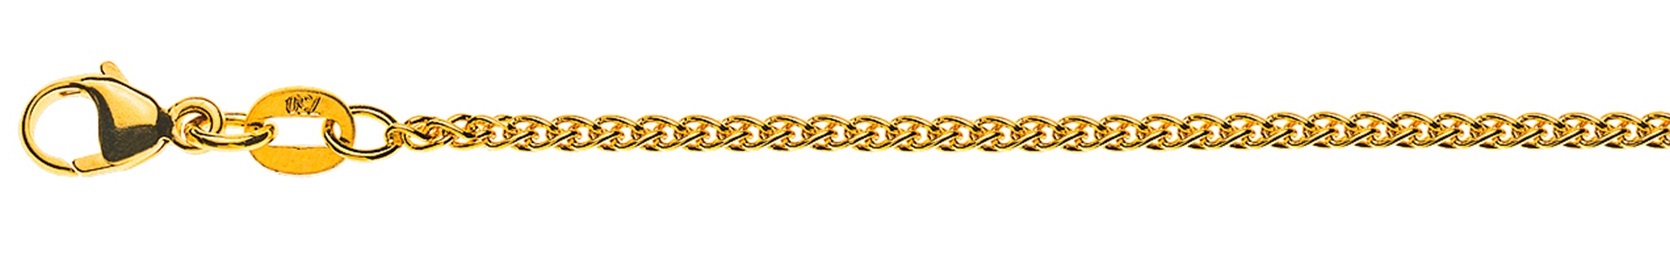 AURONOS Élégance Halskette Gelbgold 14K Zopfkette 60cm 1.6mm